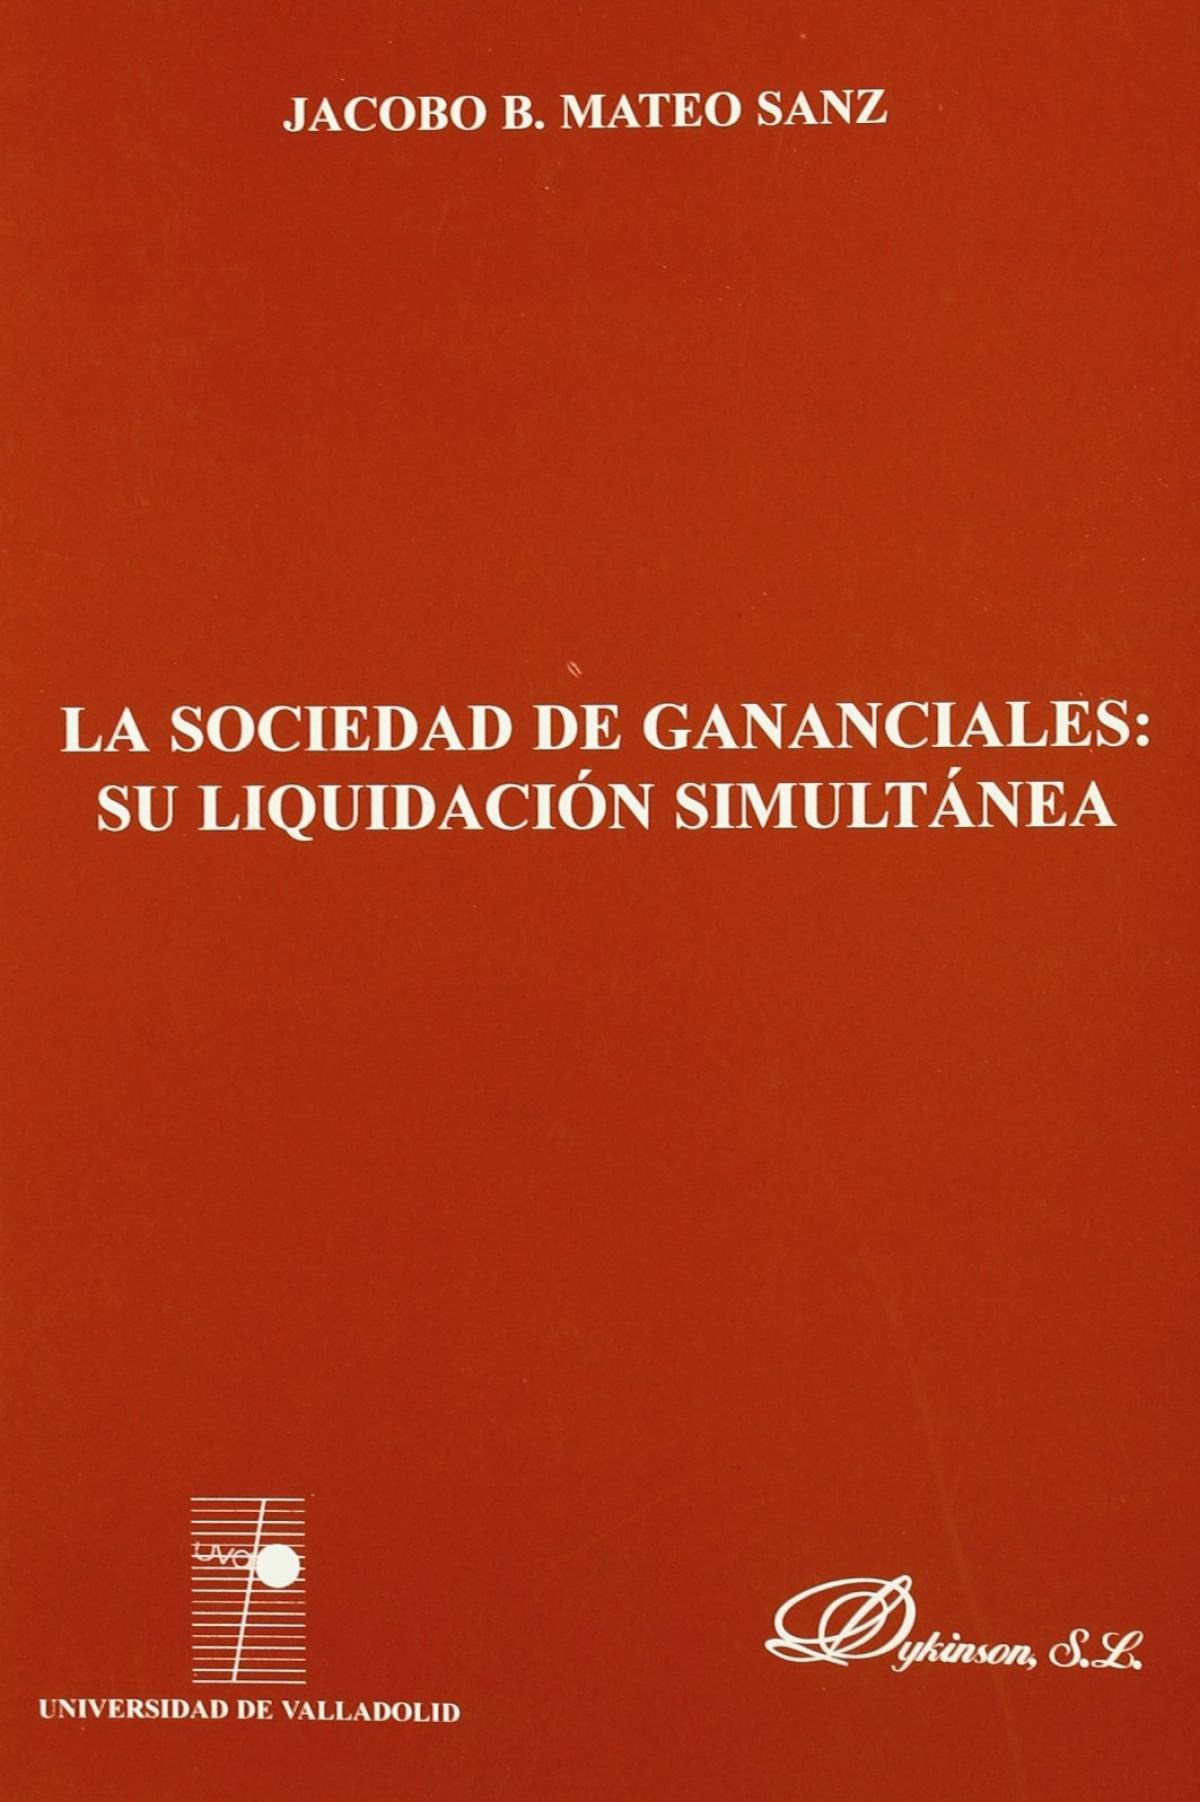 Sociedad de gananciales,la:su liquidacion simultanea. - Mateo Sanz,J.B.